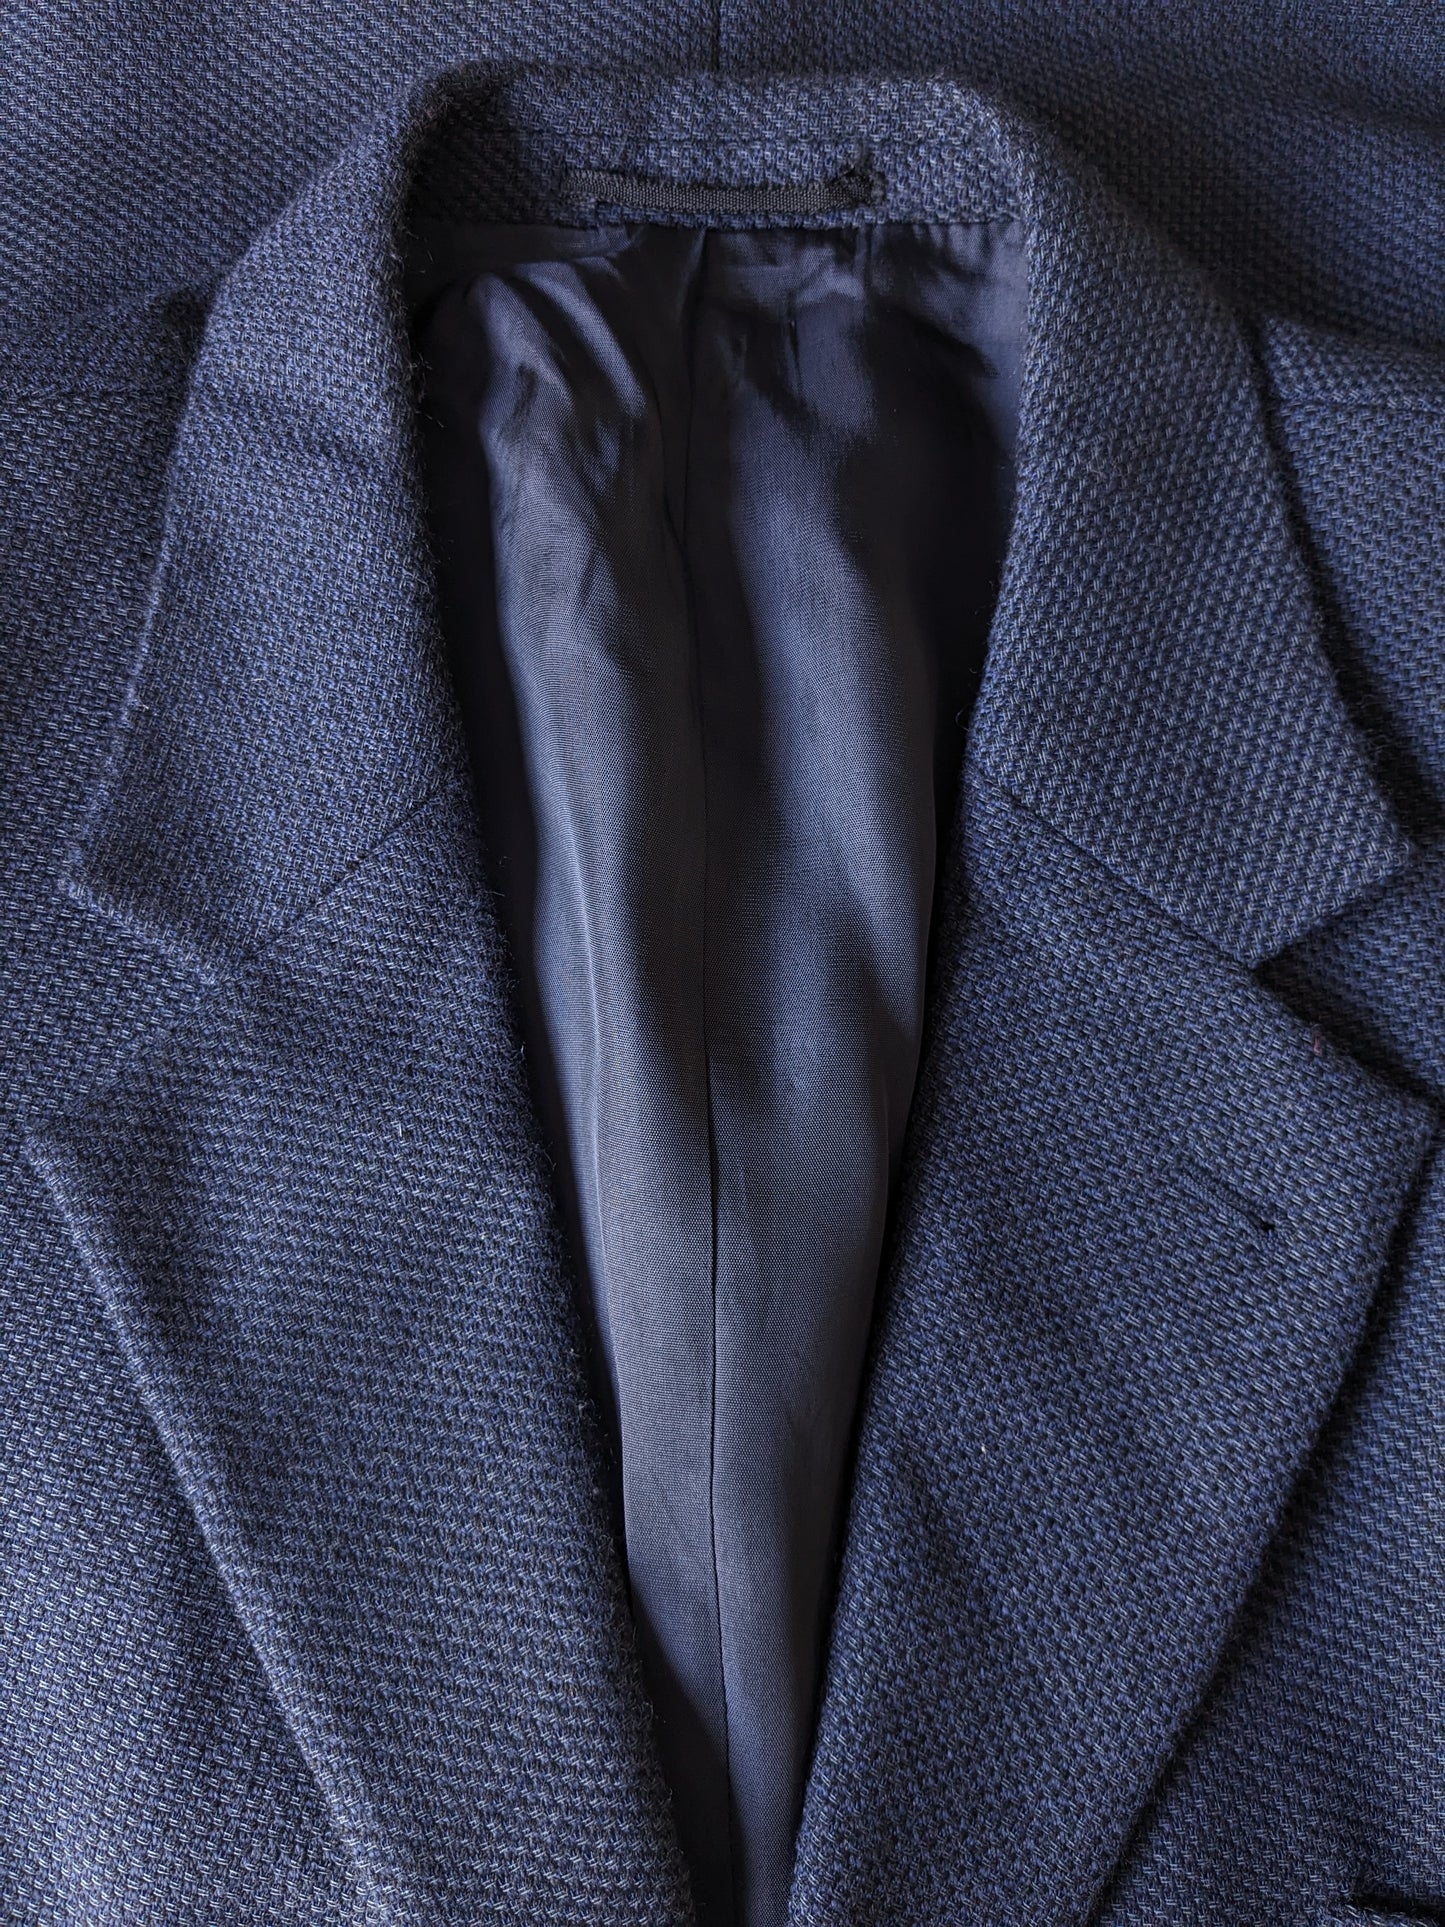 Vintage Kreymborg woolen jacket. Blue black mixed. Size 27 (54 / l).